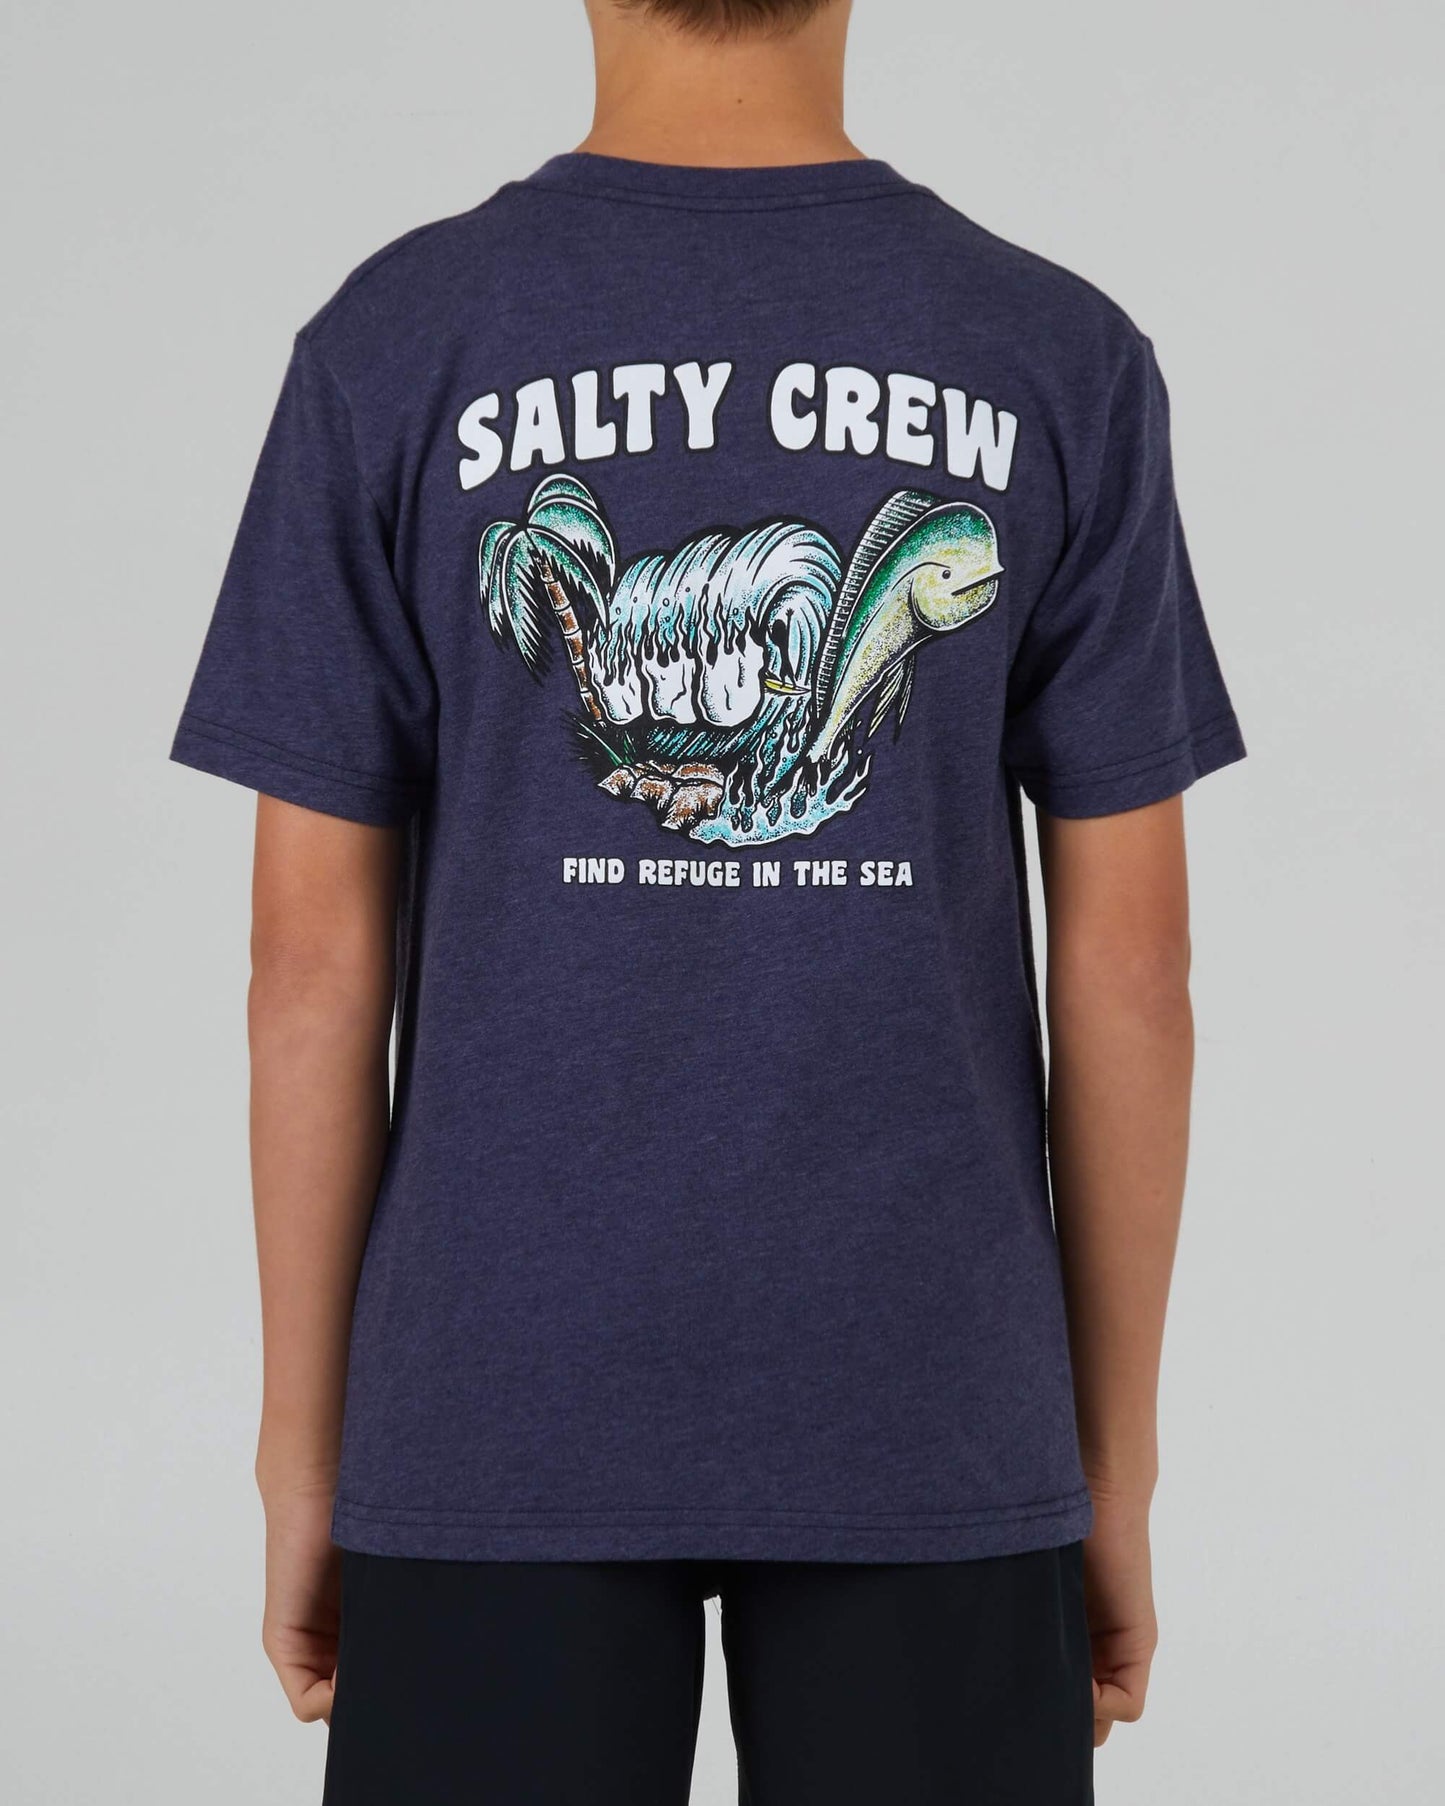 Salty Crew Boys - Shaka Boys S/S Tee - Navy Heather